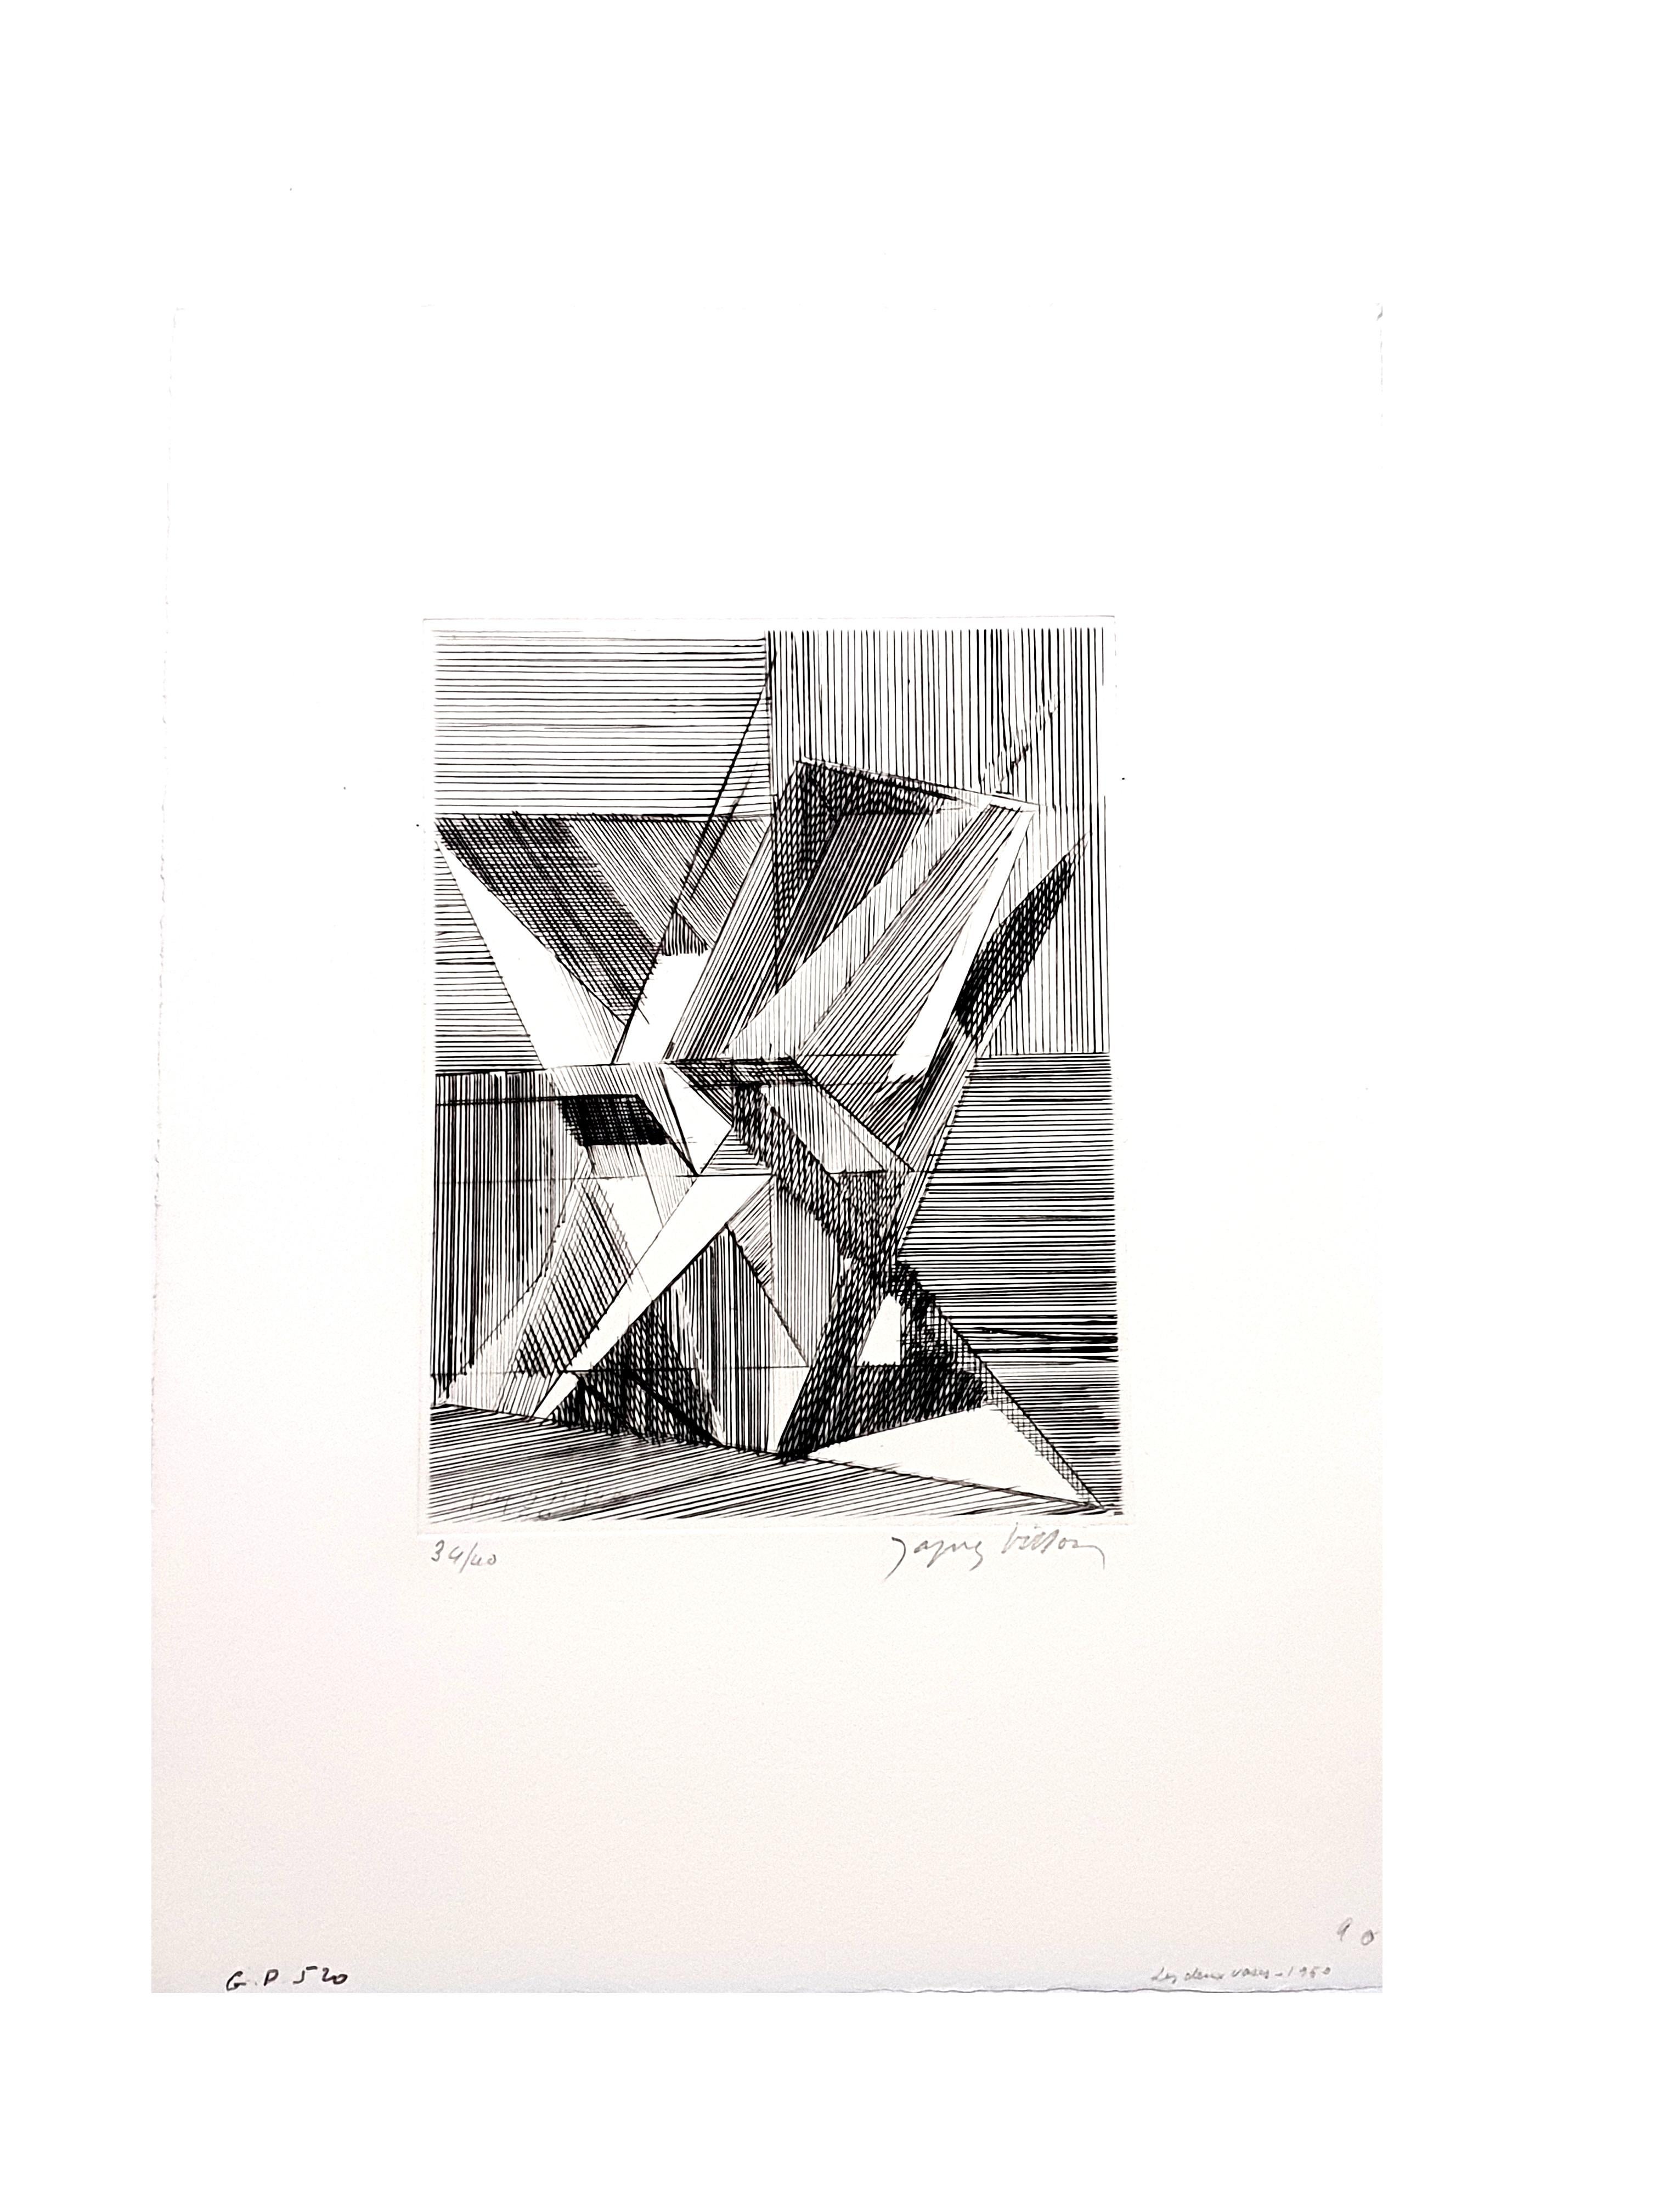 Jacques Villon - Zwei kubistische Vasen - Original-Radierung
1950
Mit Bleistift signiert
Auflage von 40 Stück

Jacques Villon (1875 - 1963)

Jacques Villon wurde am 31. Juli 1875 in Damville in der Normandie als Gaston Duchamp geboren. Seine Familie